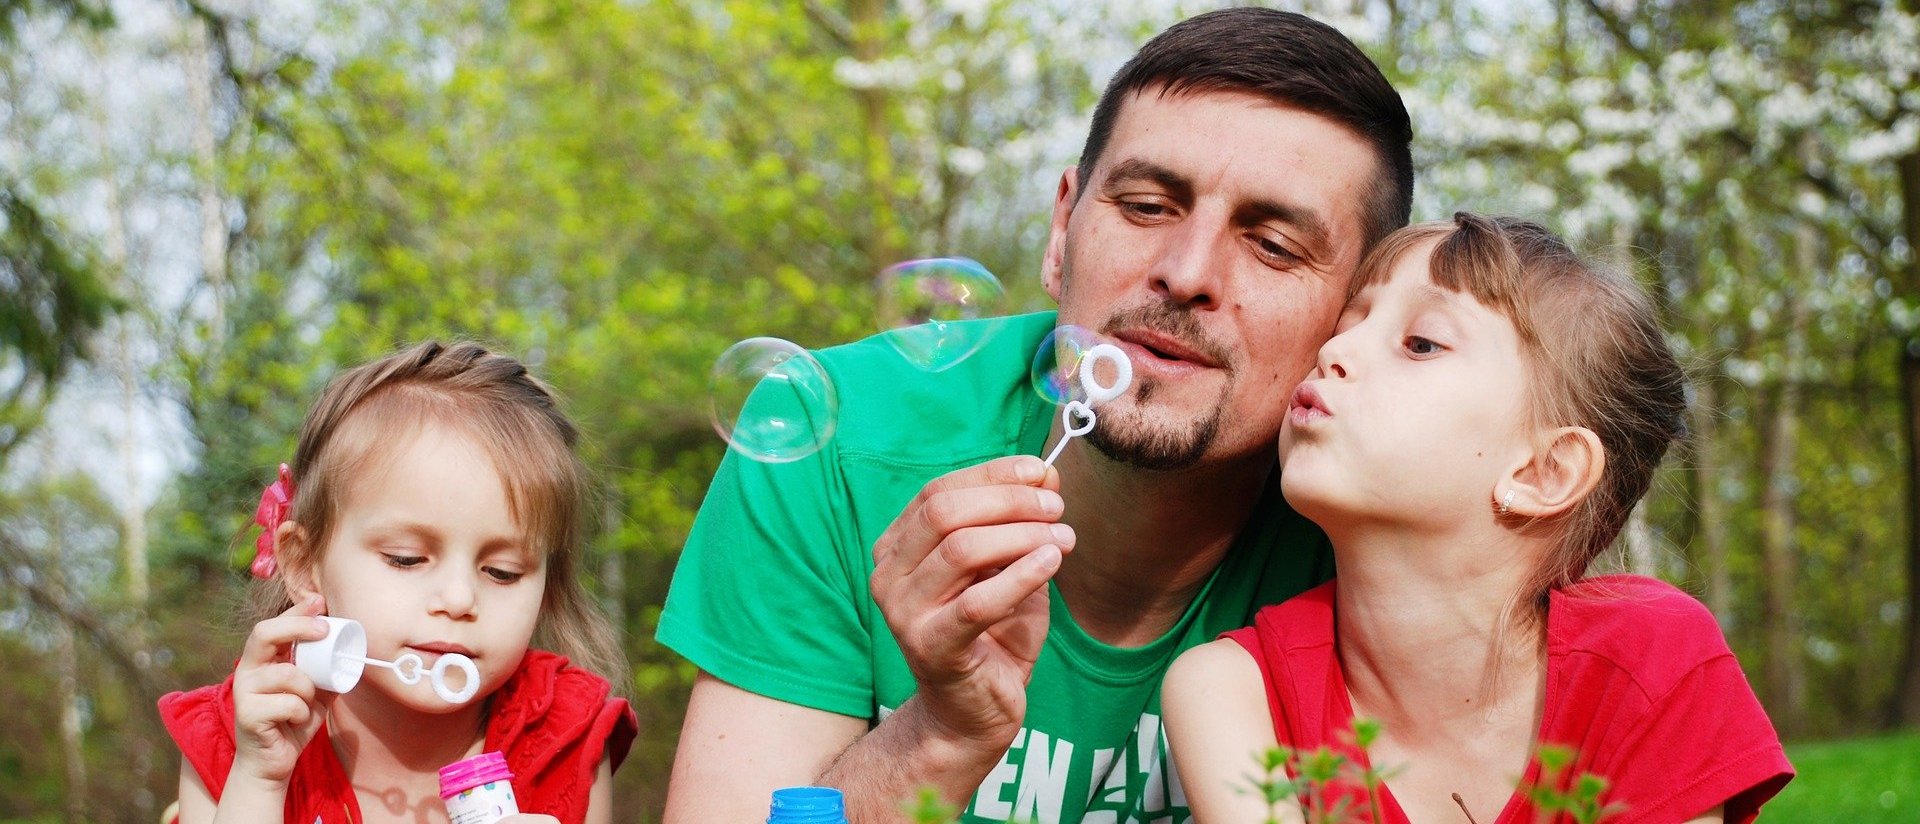 Das Bild zeigt einen Vater mit seinen beiden Töchtern auf einer Blumenwiese beim Seifenblasen spielen.